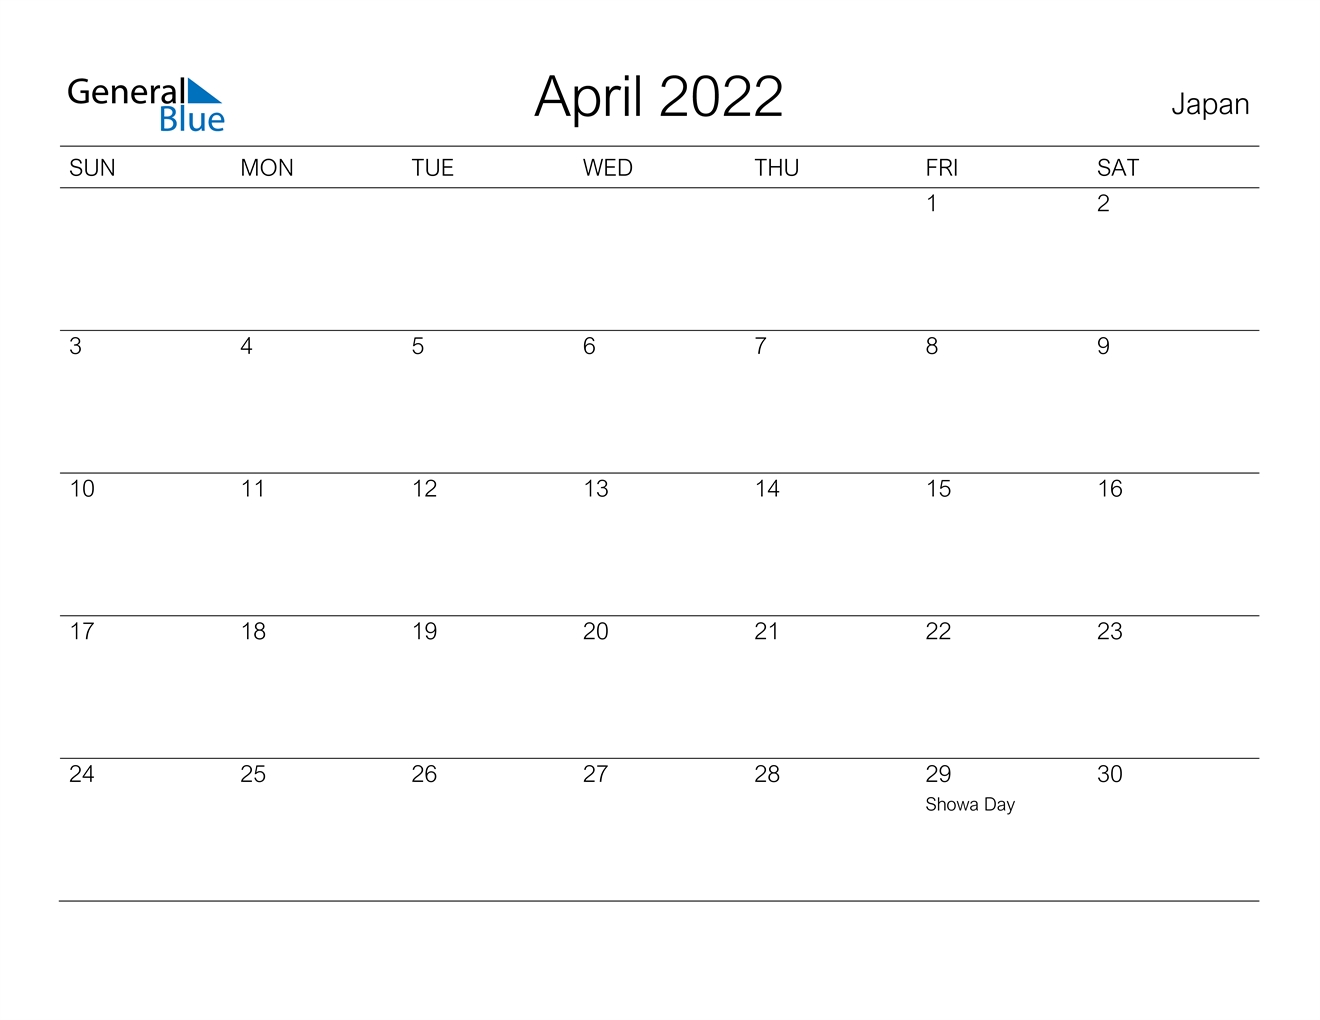 April 2022 Calendar - Japan